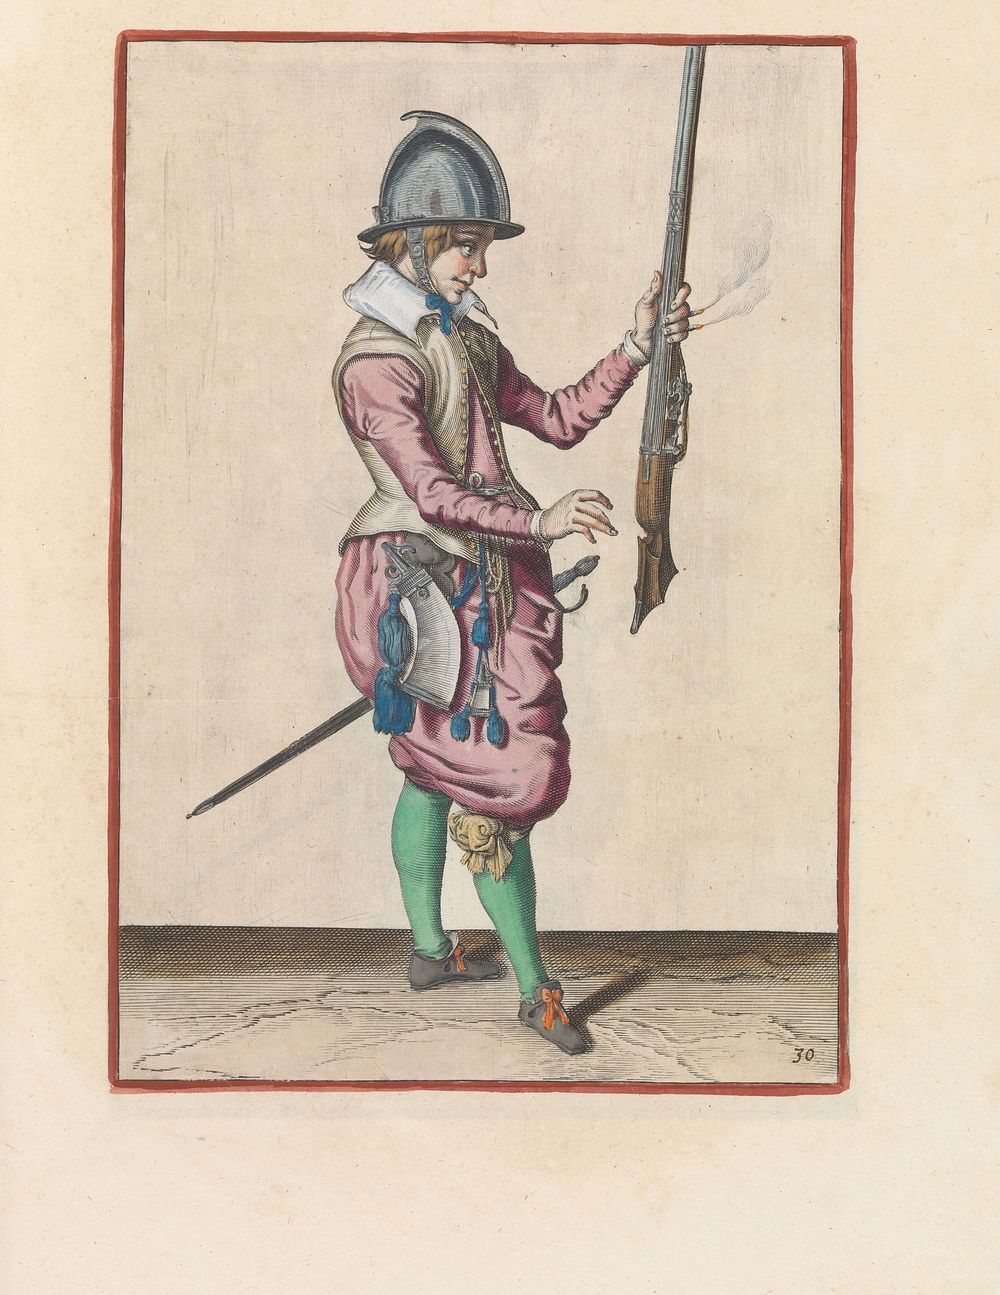 Soldaat die zijn roer met zijn linkerhand rechtop vasthoudt (c. 1597 - 1607) by Jacques de Gheyn II and Jacques de Gheyn II